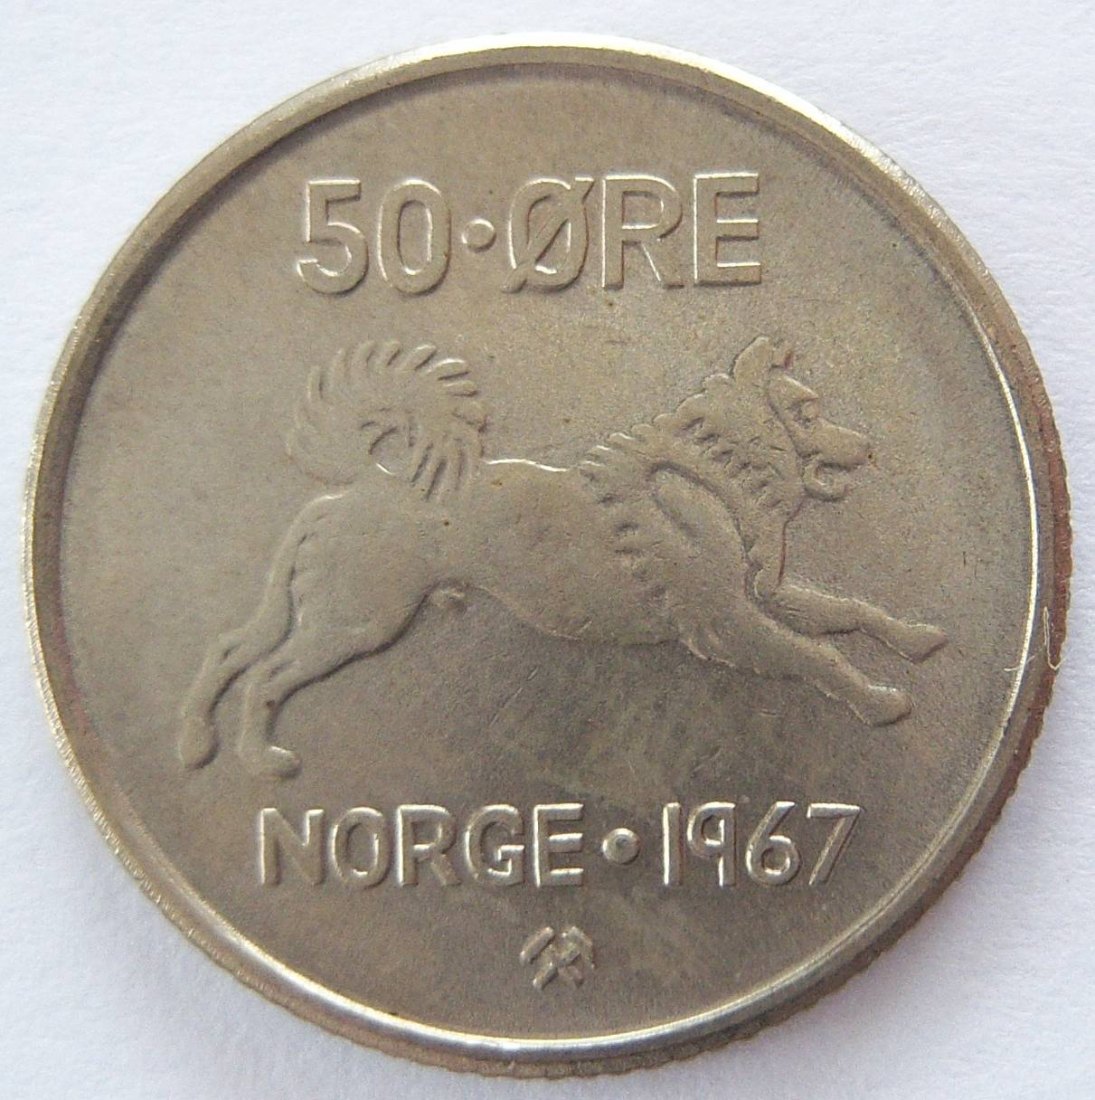  Norwegen 50 Öre 1967 ERHALTUNG !!   